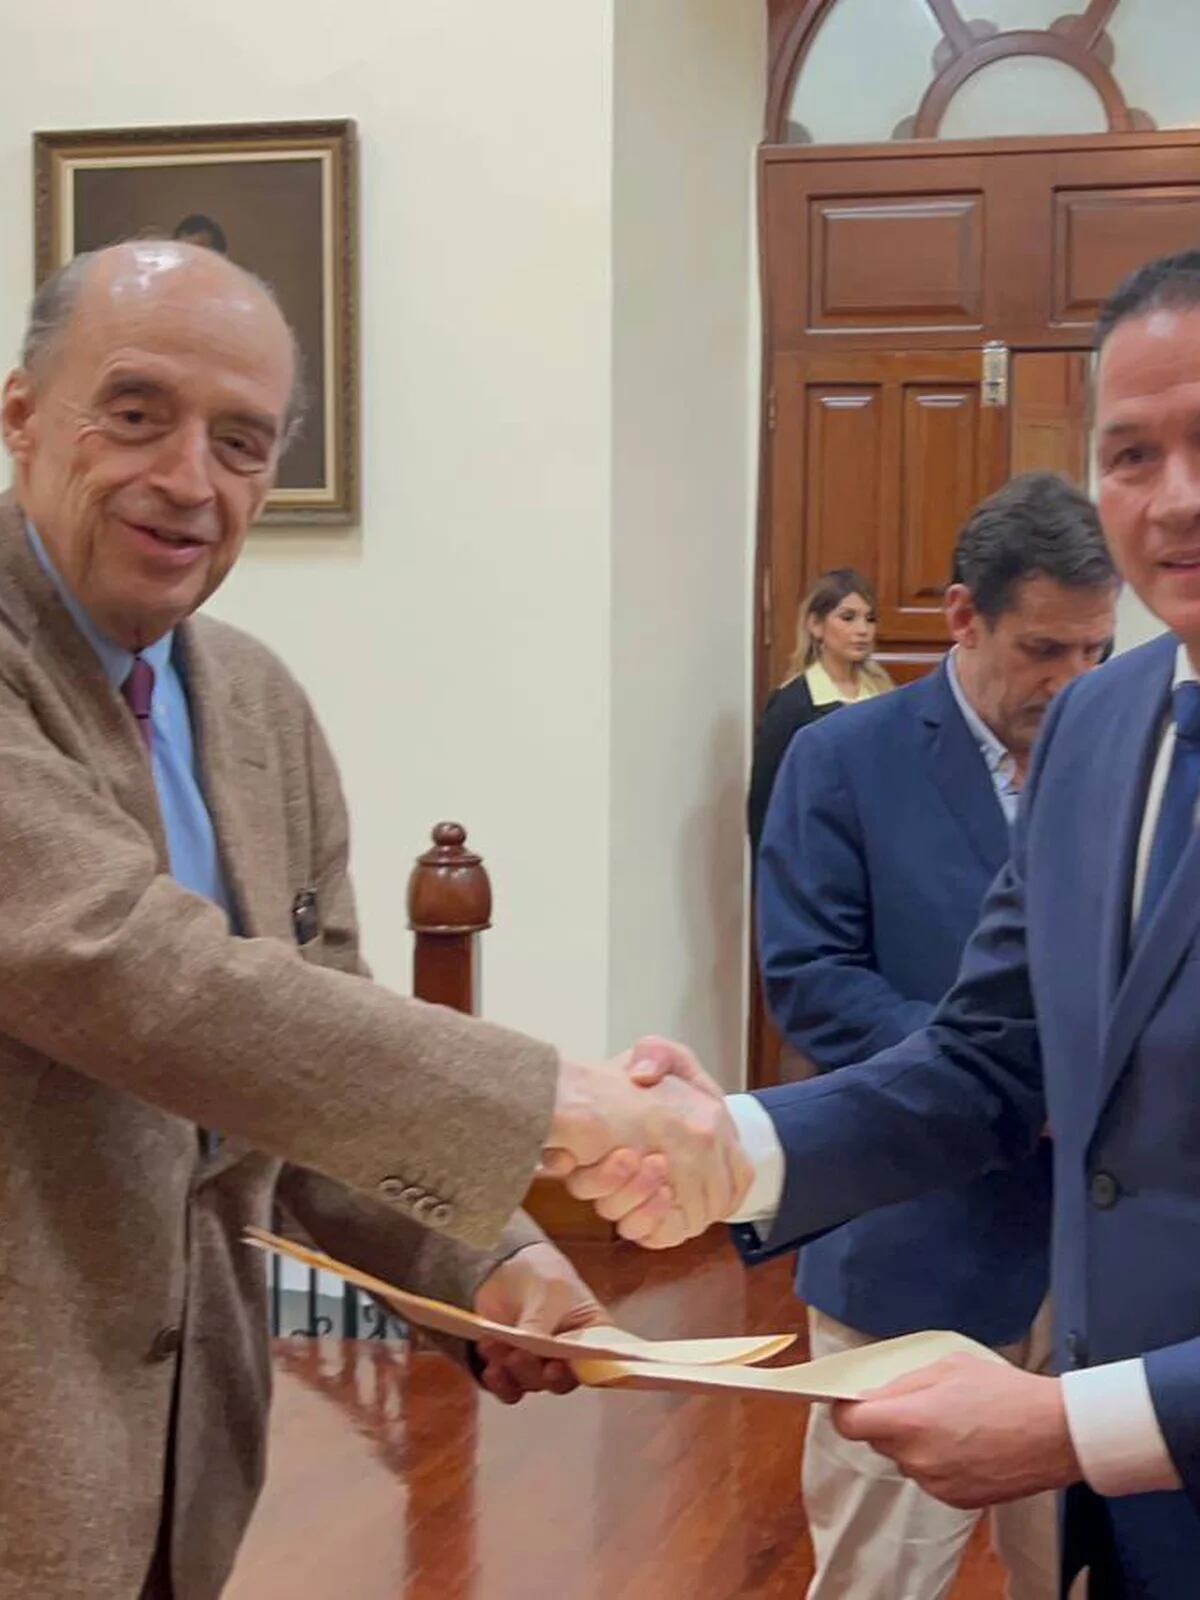 Canciller venezolana asiste a reunión de Mercosur en medio de